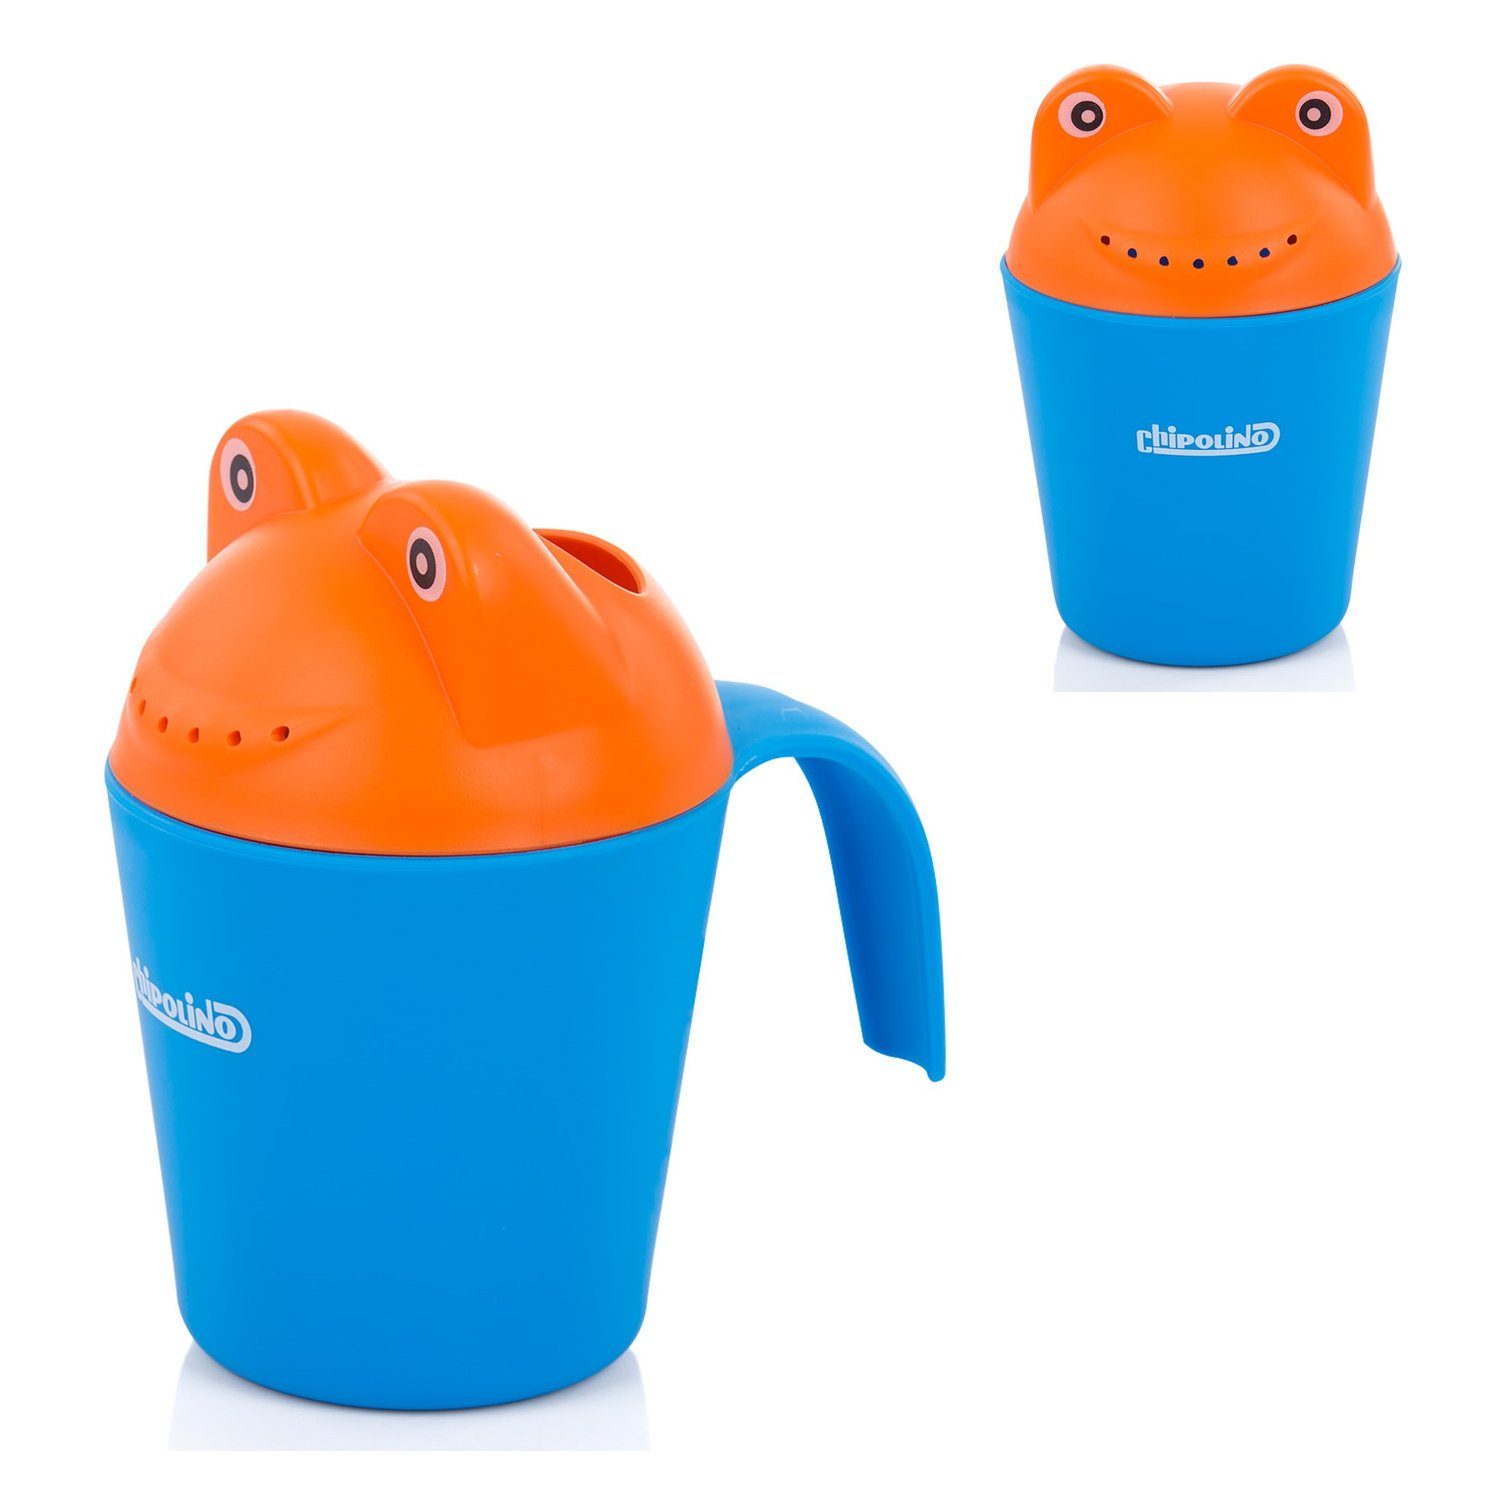 ab 10 Monaten blau Badespielzeug Griff Chipolino weiche Kanten Froggy, Baby Badetasse ergonomischer